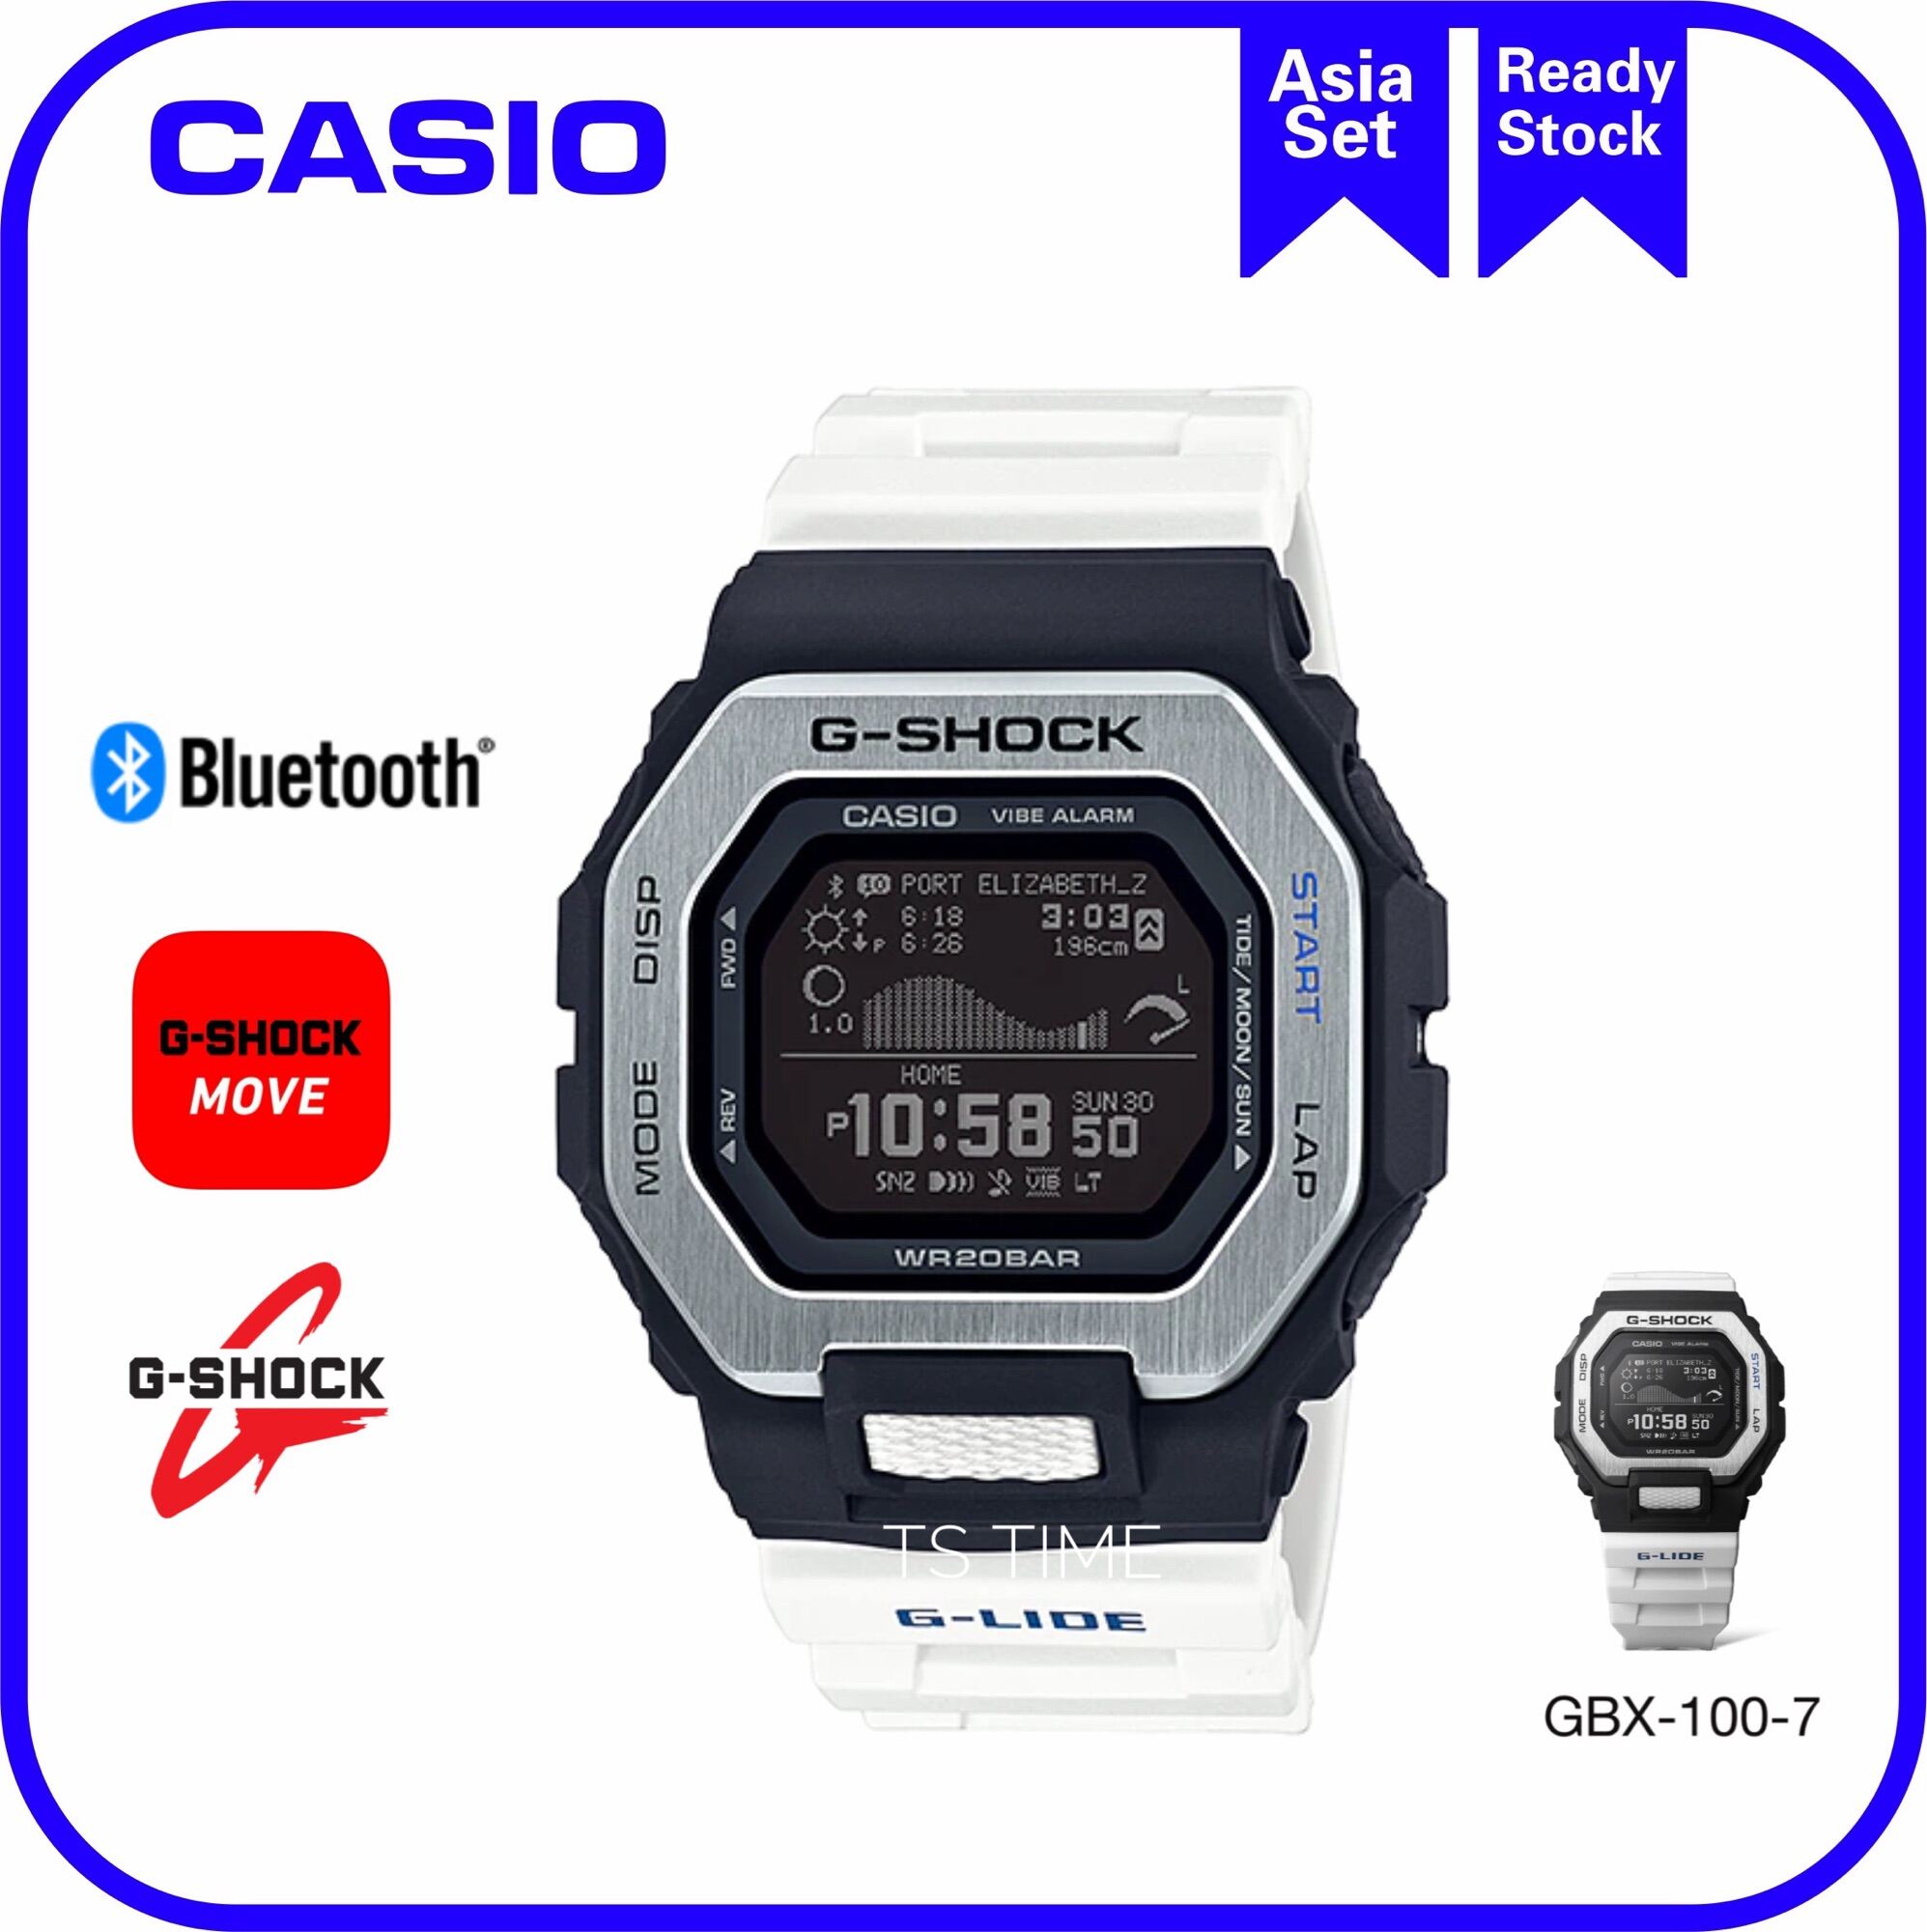 でおすすめアイテム Gショック G Shock 腕時計 Gライド Bluetooth ムーンデータ タイドグラフ メンズ Gbx 100ns 4dr カシオ Casio17 580円 Sarozambia Com